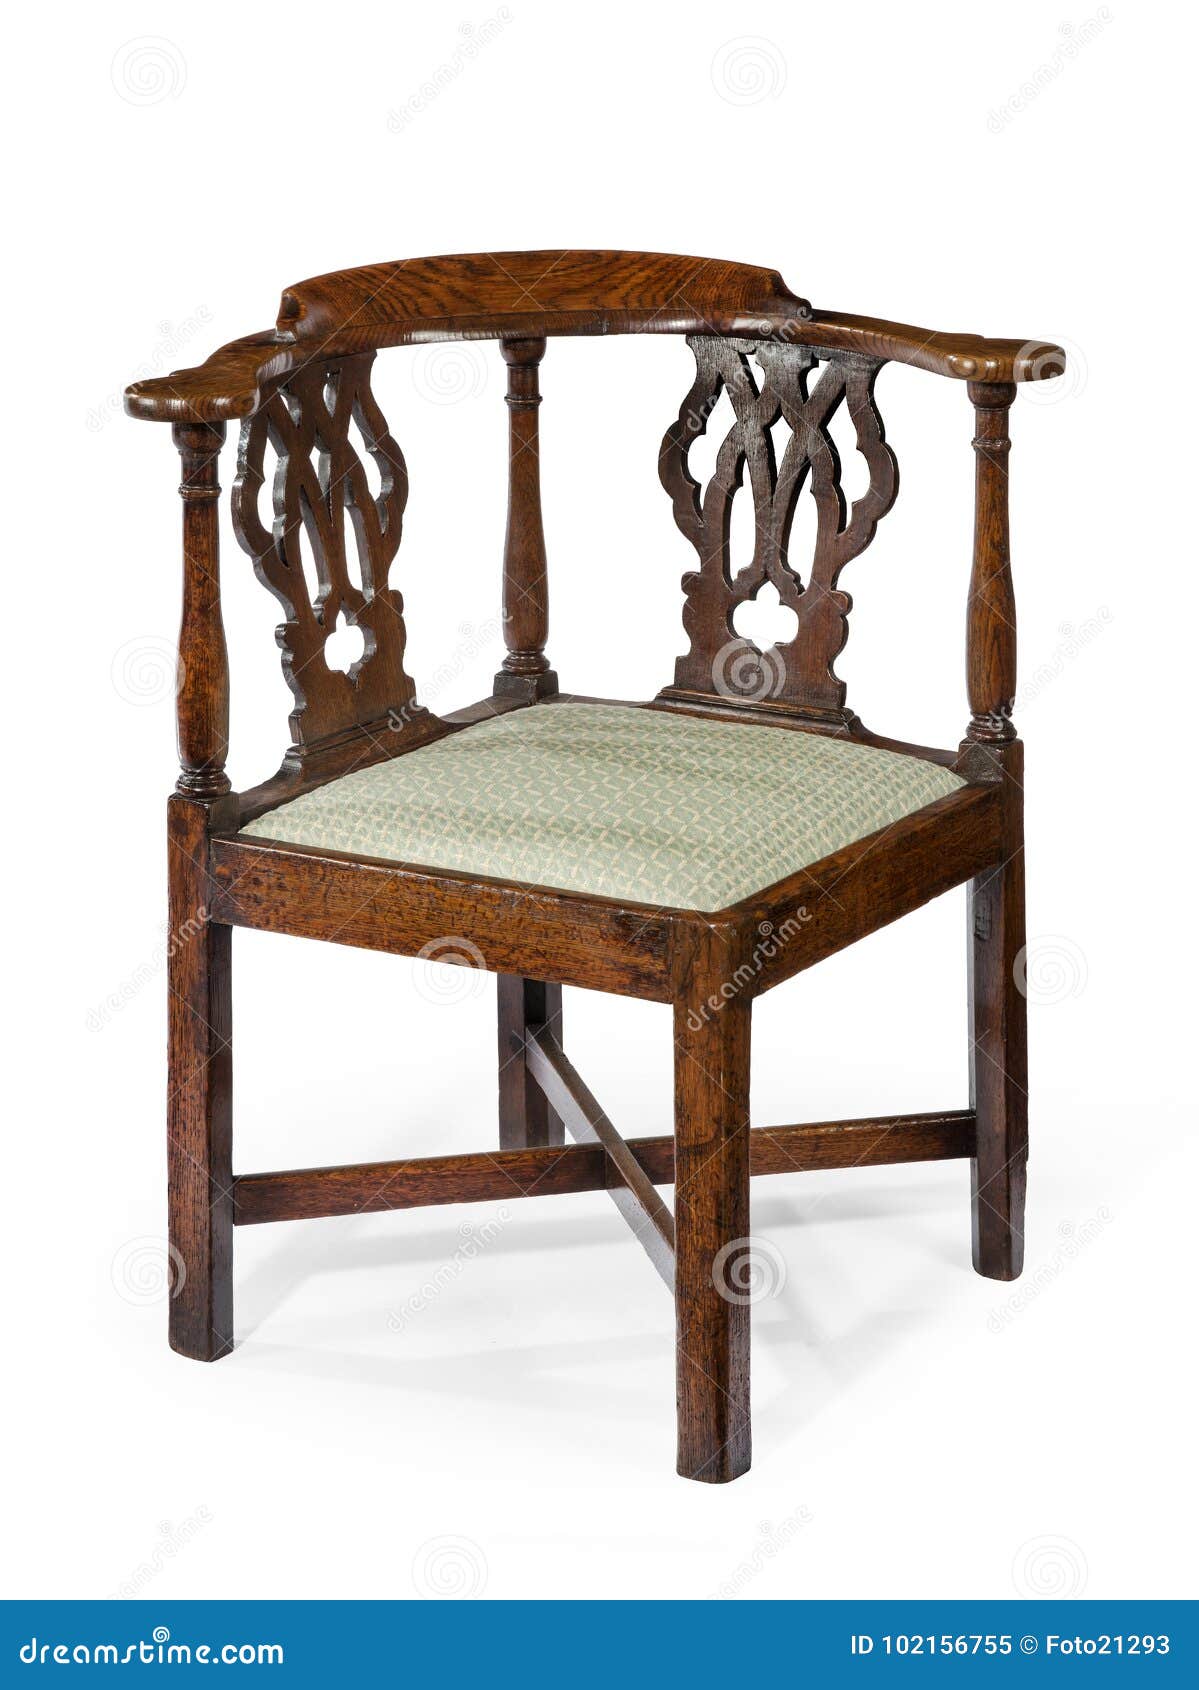 Chip Voorbijgaand Vervelend Het Oude Antieke Houten Mahonie Van De Hoekstoel Stock Afbeelding - Image  of meubilair, stoel: 102156755